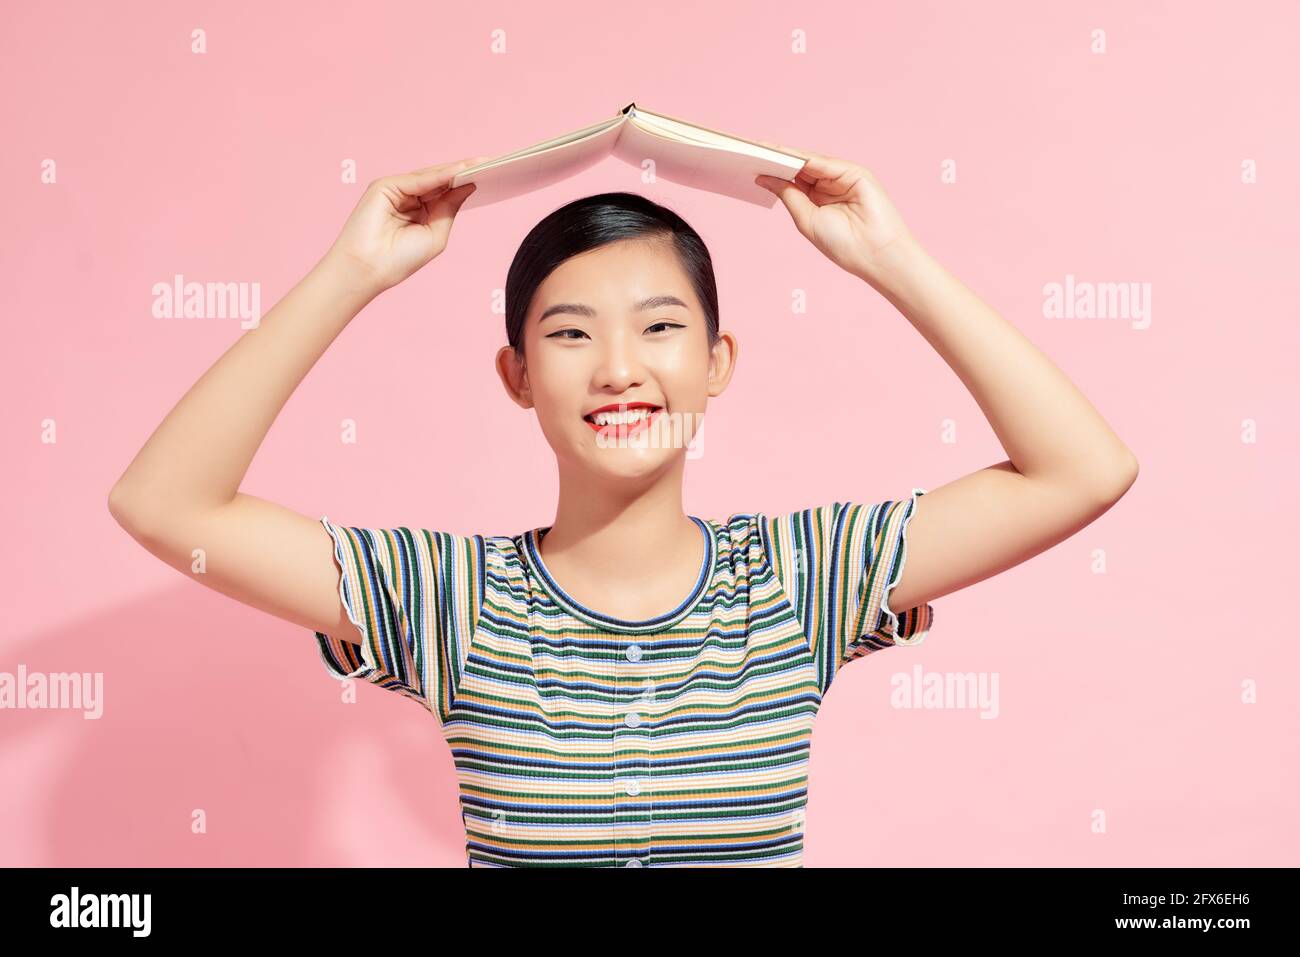 Portrait d'une jeune fille étudiante drôle et souriante avec un ouvert livre sur sa tête sur fond rose Banque D'Images